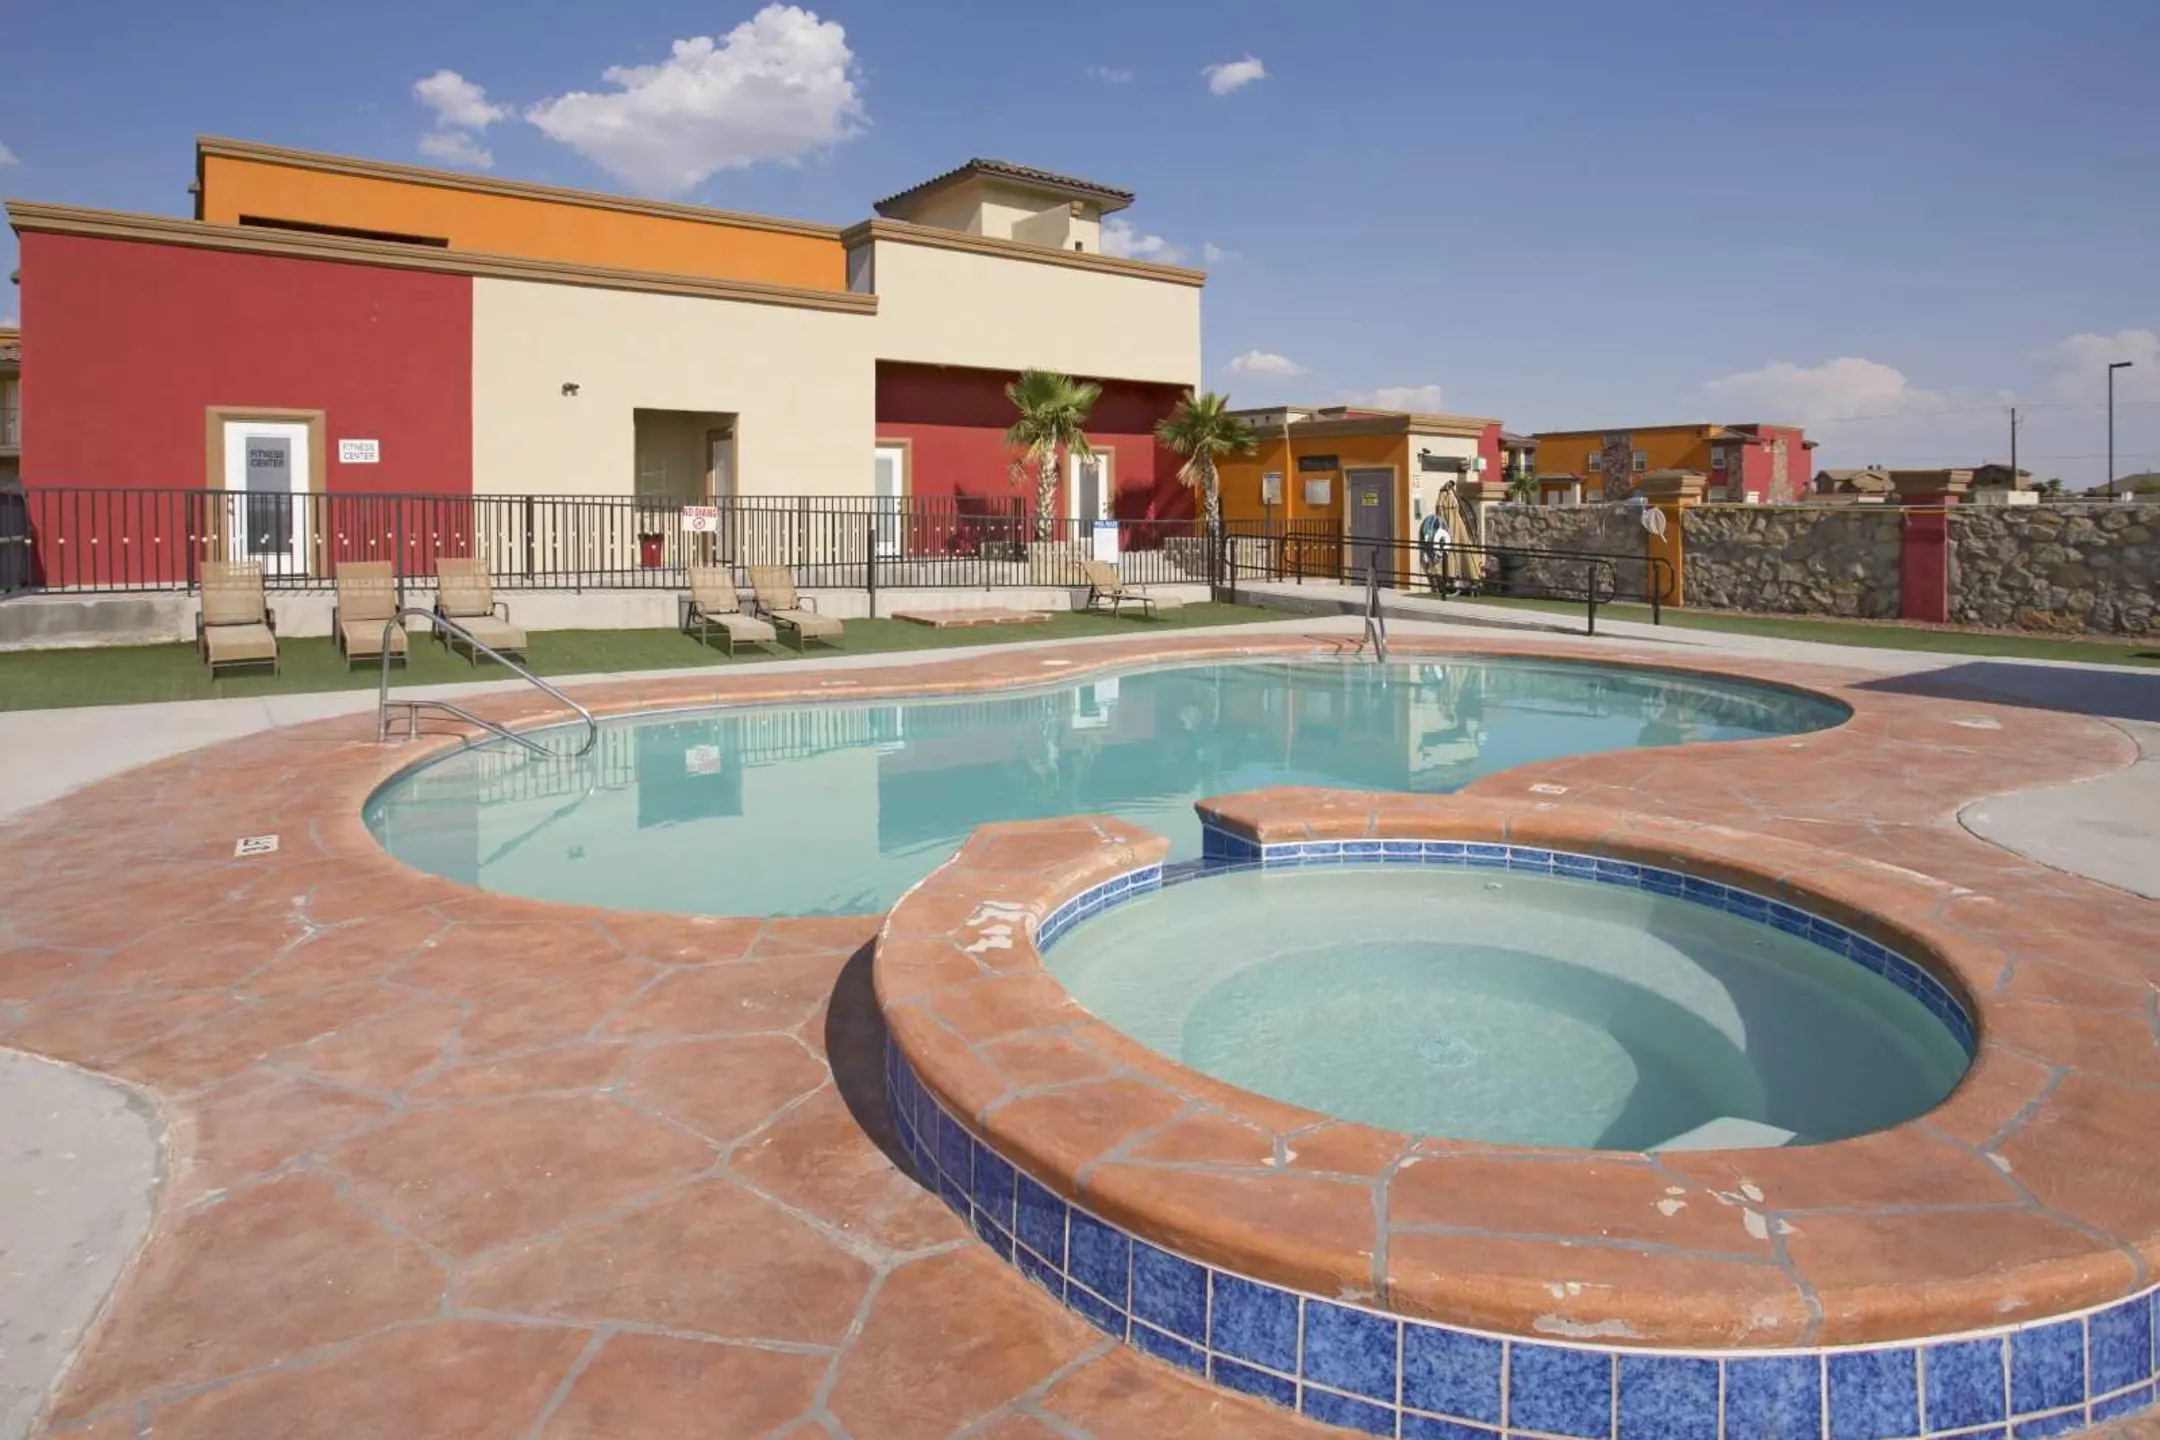 Pool - Los Balcones Apartments - El Paso, TX